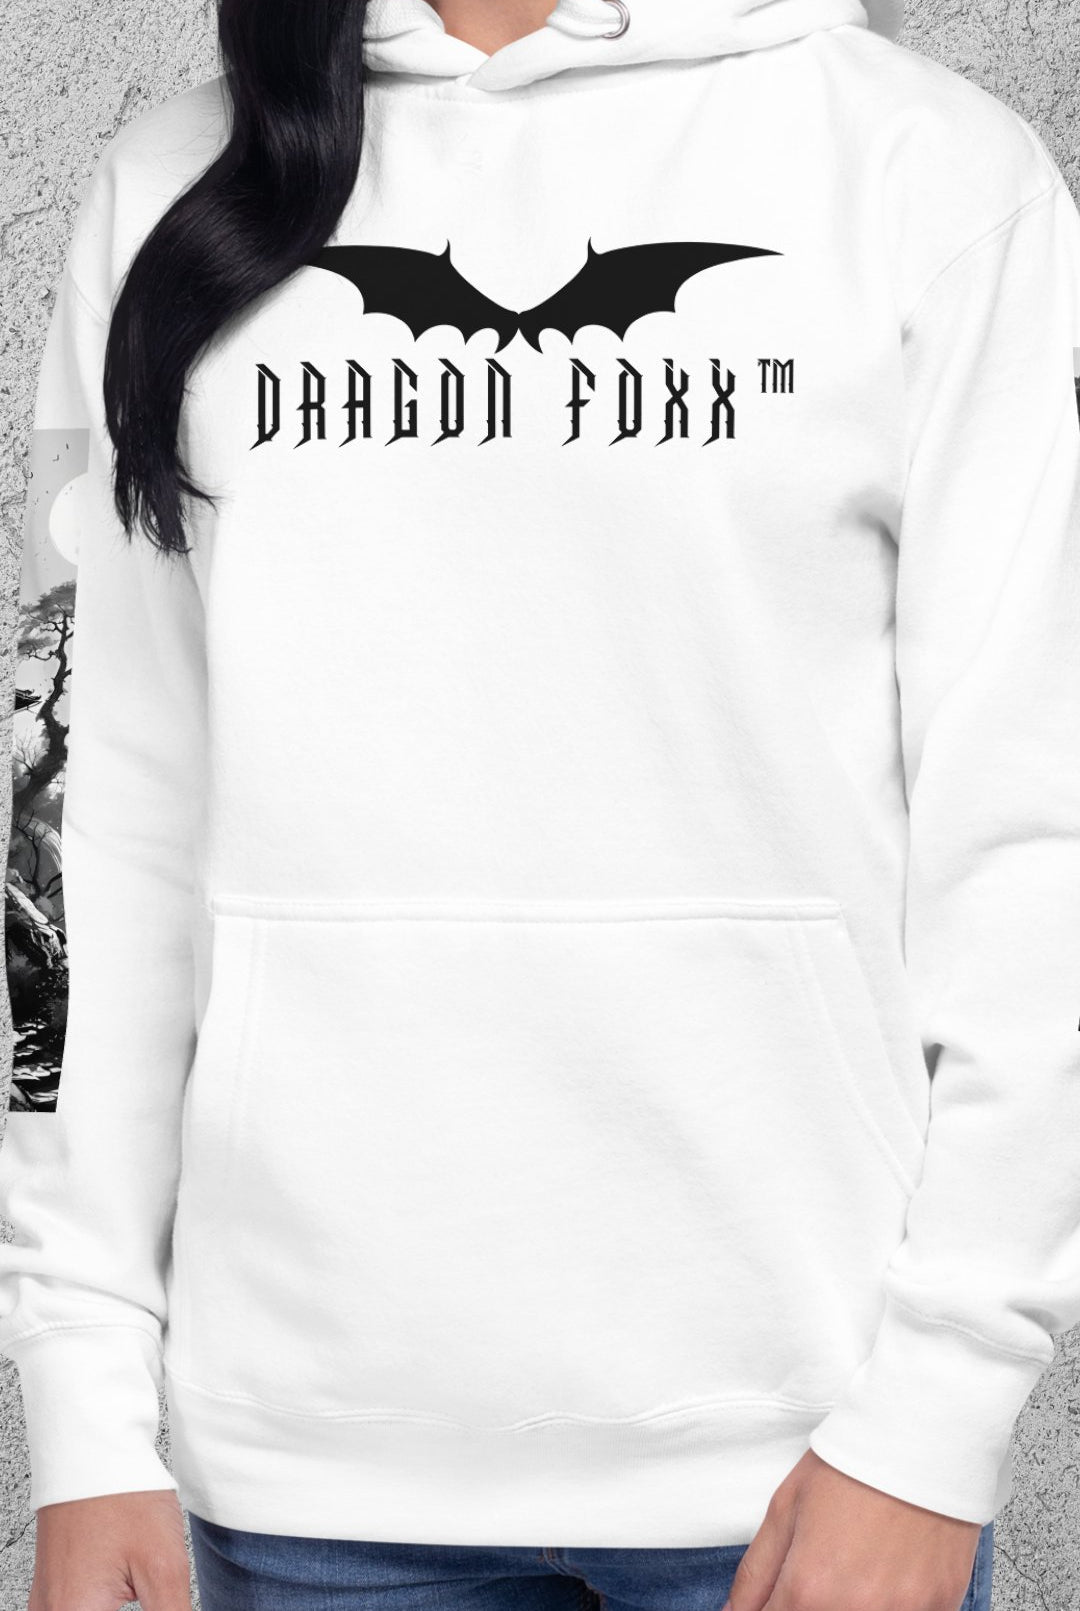 SHIA - Dragon Foxx™ Women's Anime Style White Hoodie - Women's Hoodies - DRAGON FOXX™ - SHIA - Dragon Foxx™ Women's Anime Style White Hoodie - 8466403_10774 - S - White - Anime Hoodie - Anime Style White Hoodie - Dragon Foxx™